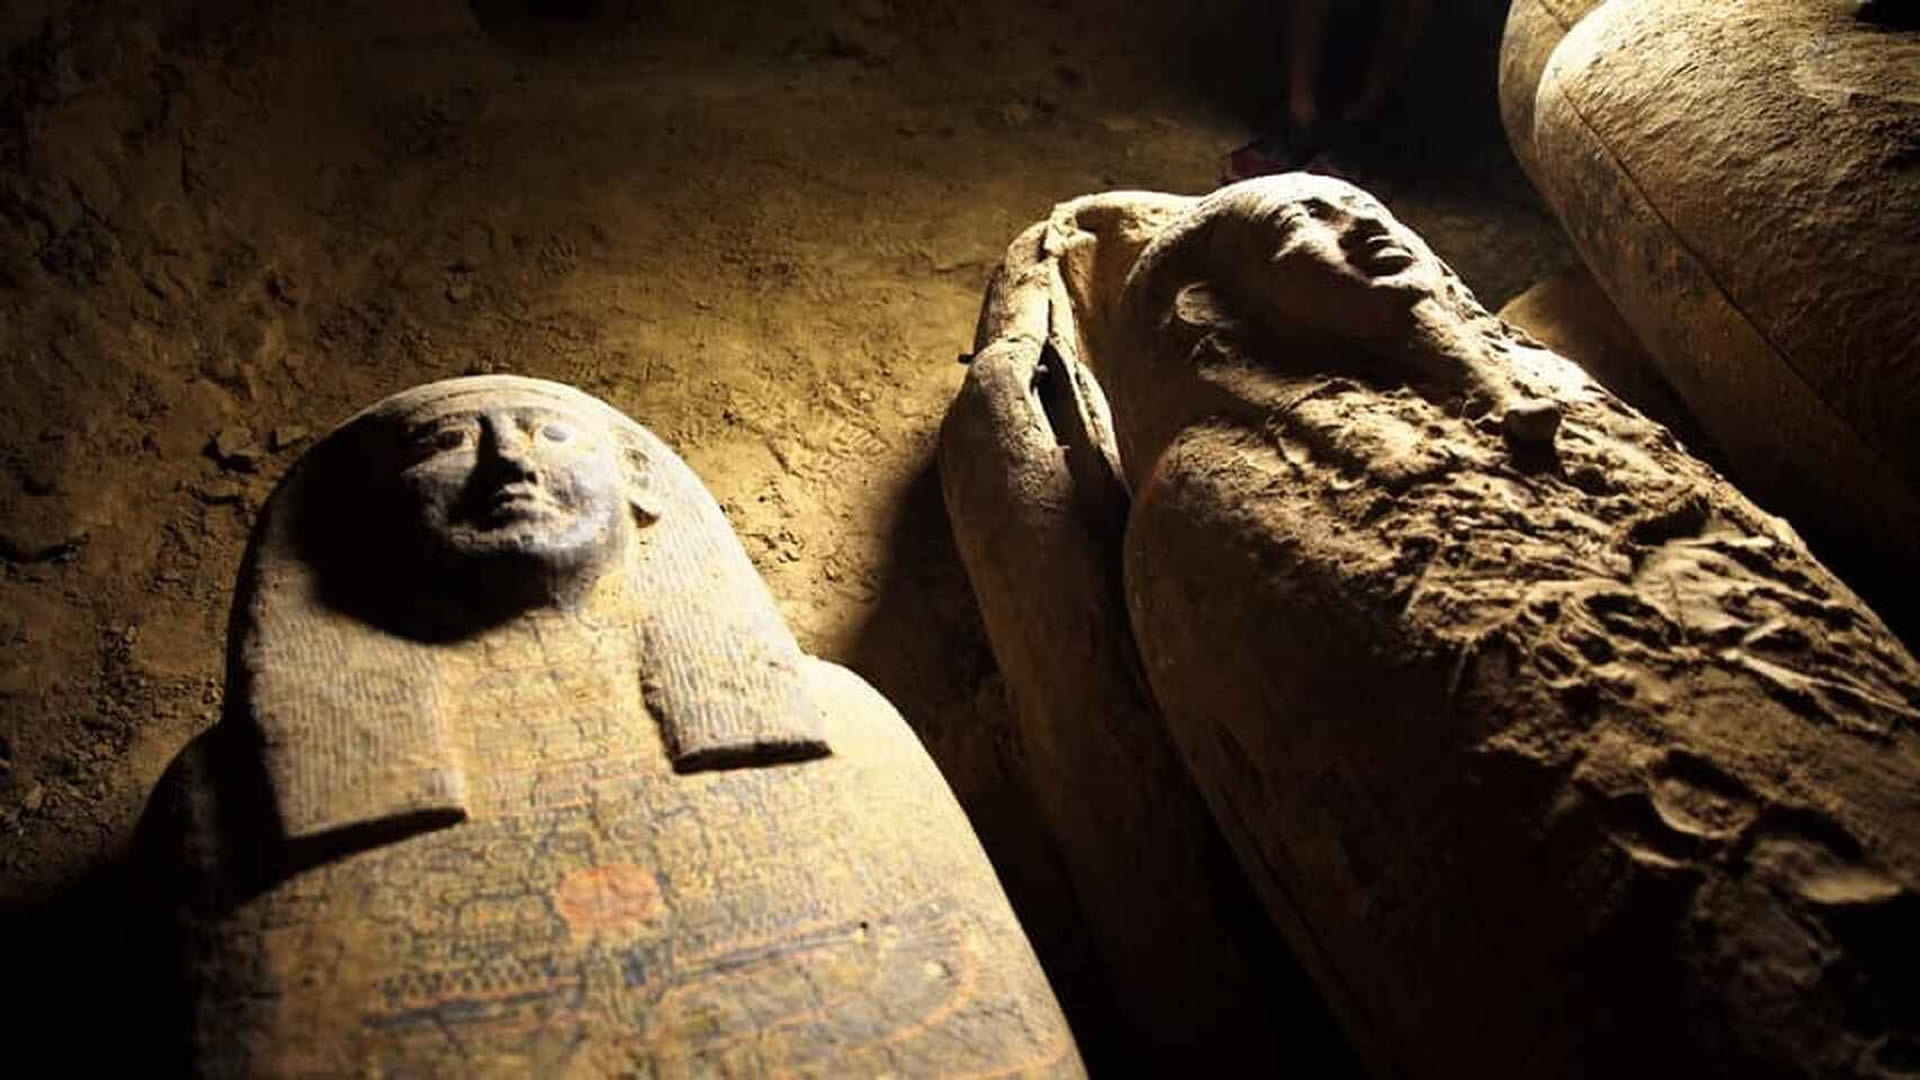 Descubren 13 ataúdes totalmente sellados e intactos de 2.500 años en Egipto